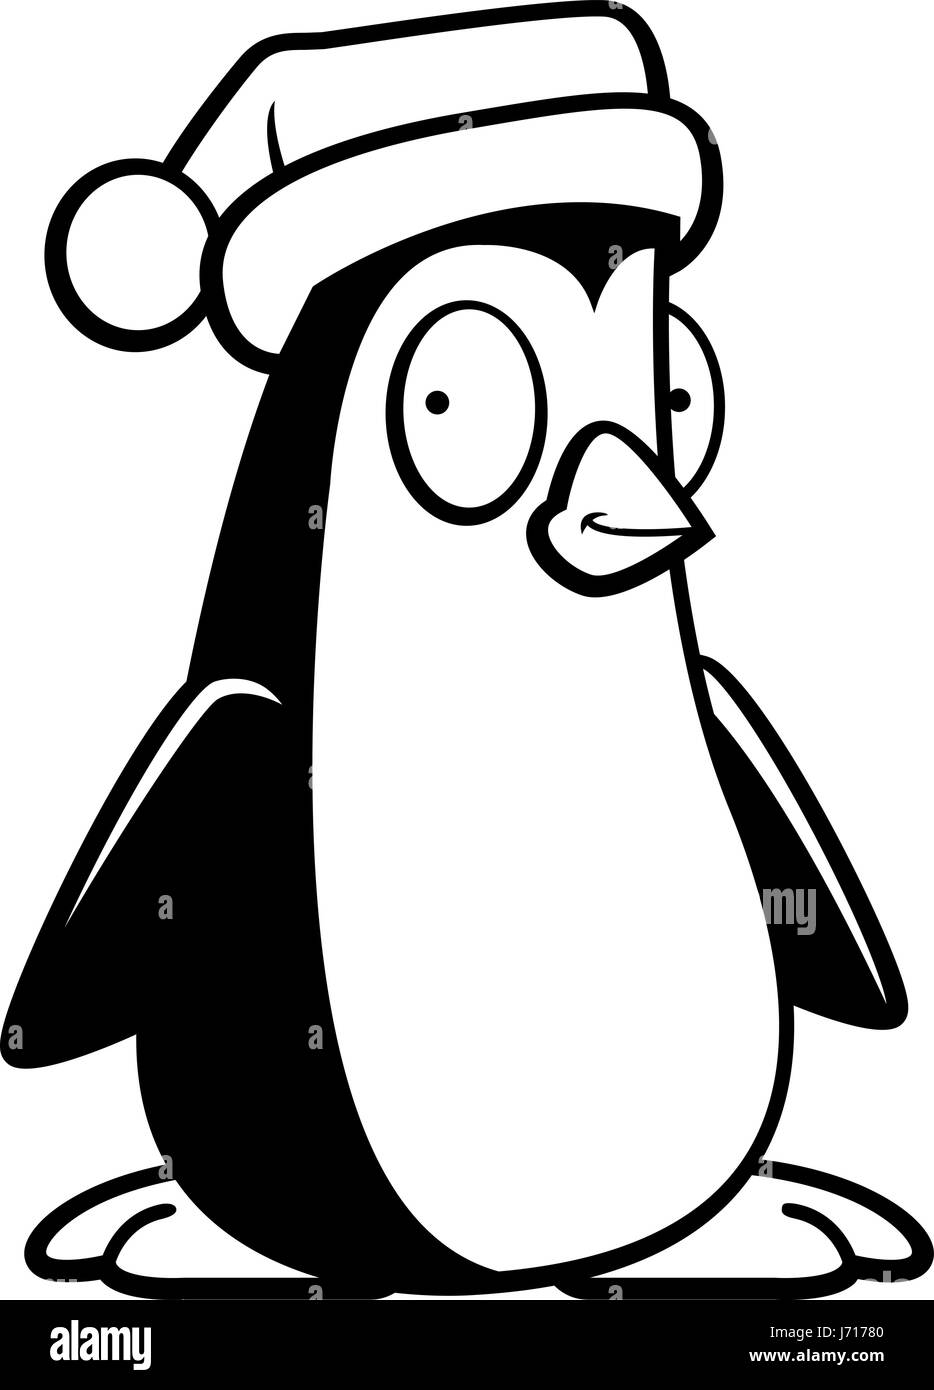 Weinachts pinguin Schwarzweiß Stockfotos und  bilder   Alamy